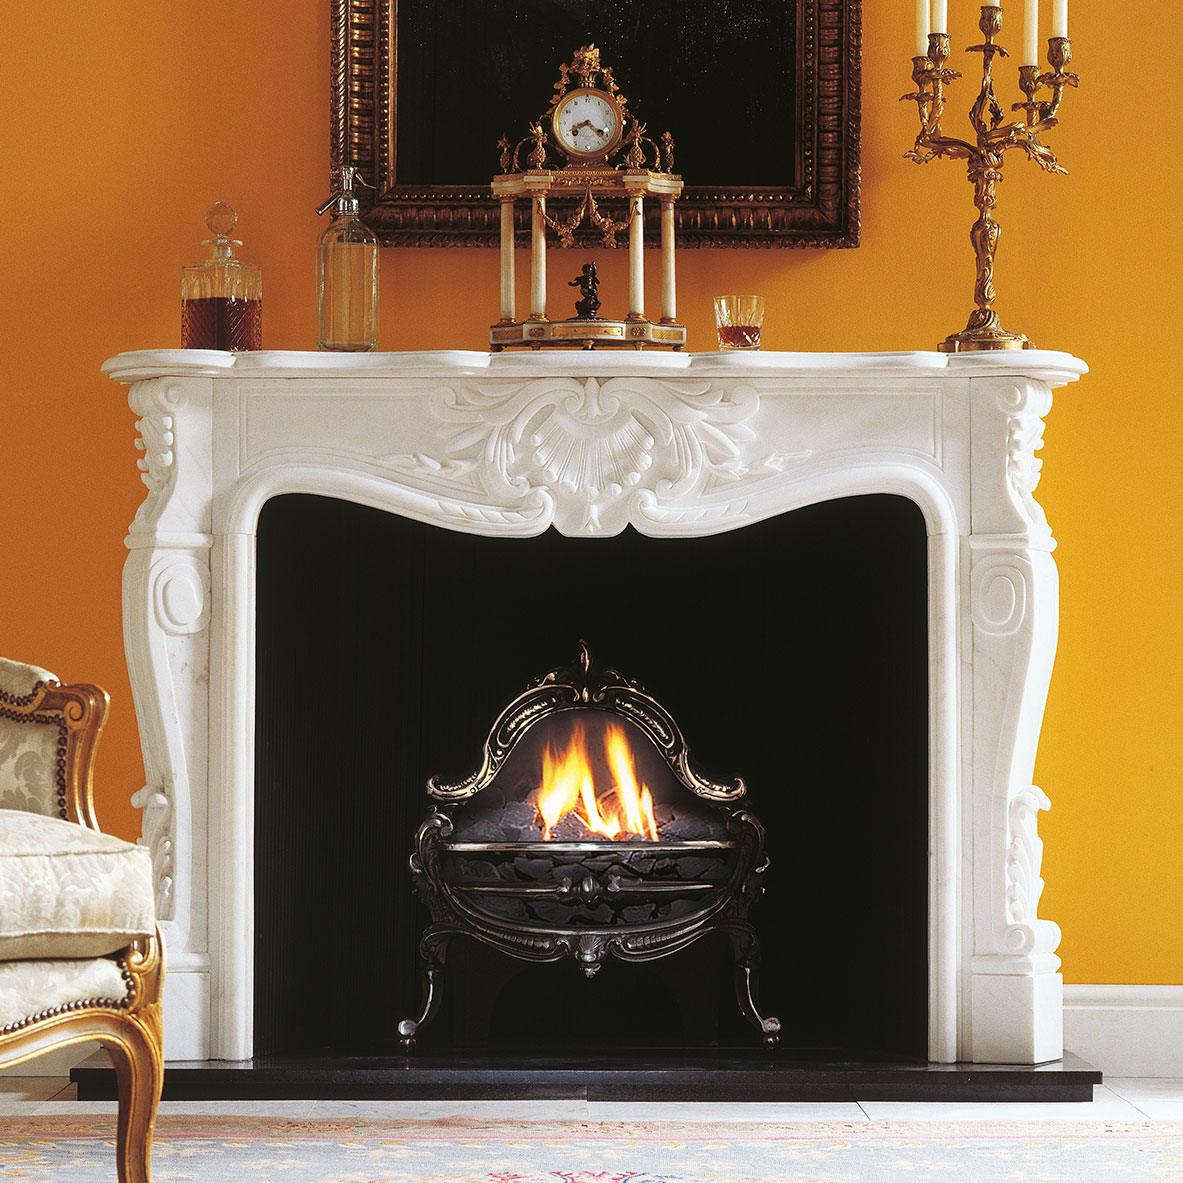 Louis VX Versailles Room set fireplace